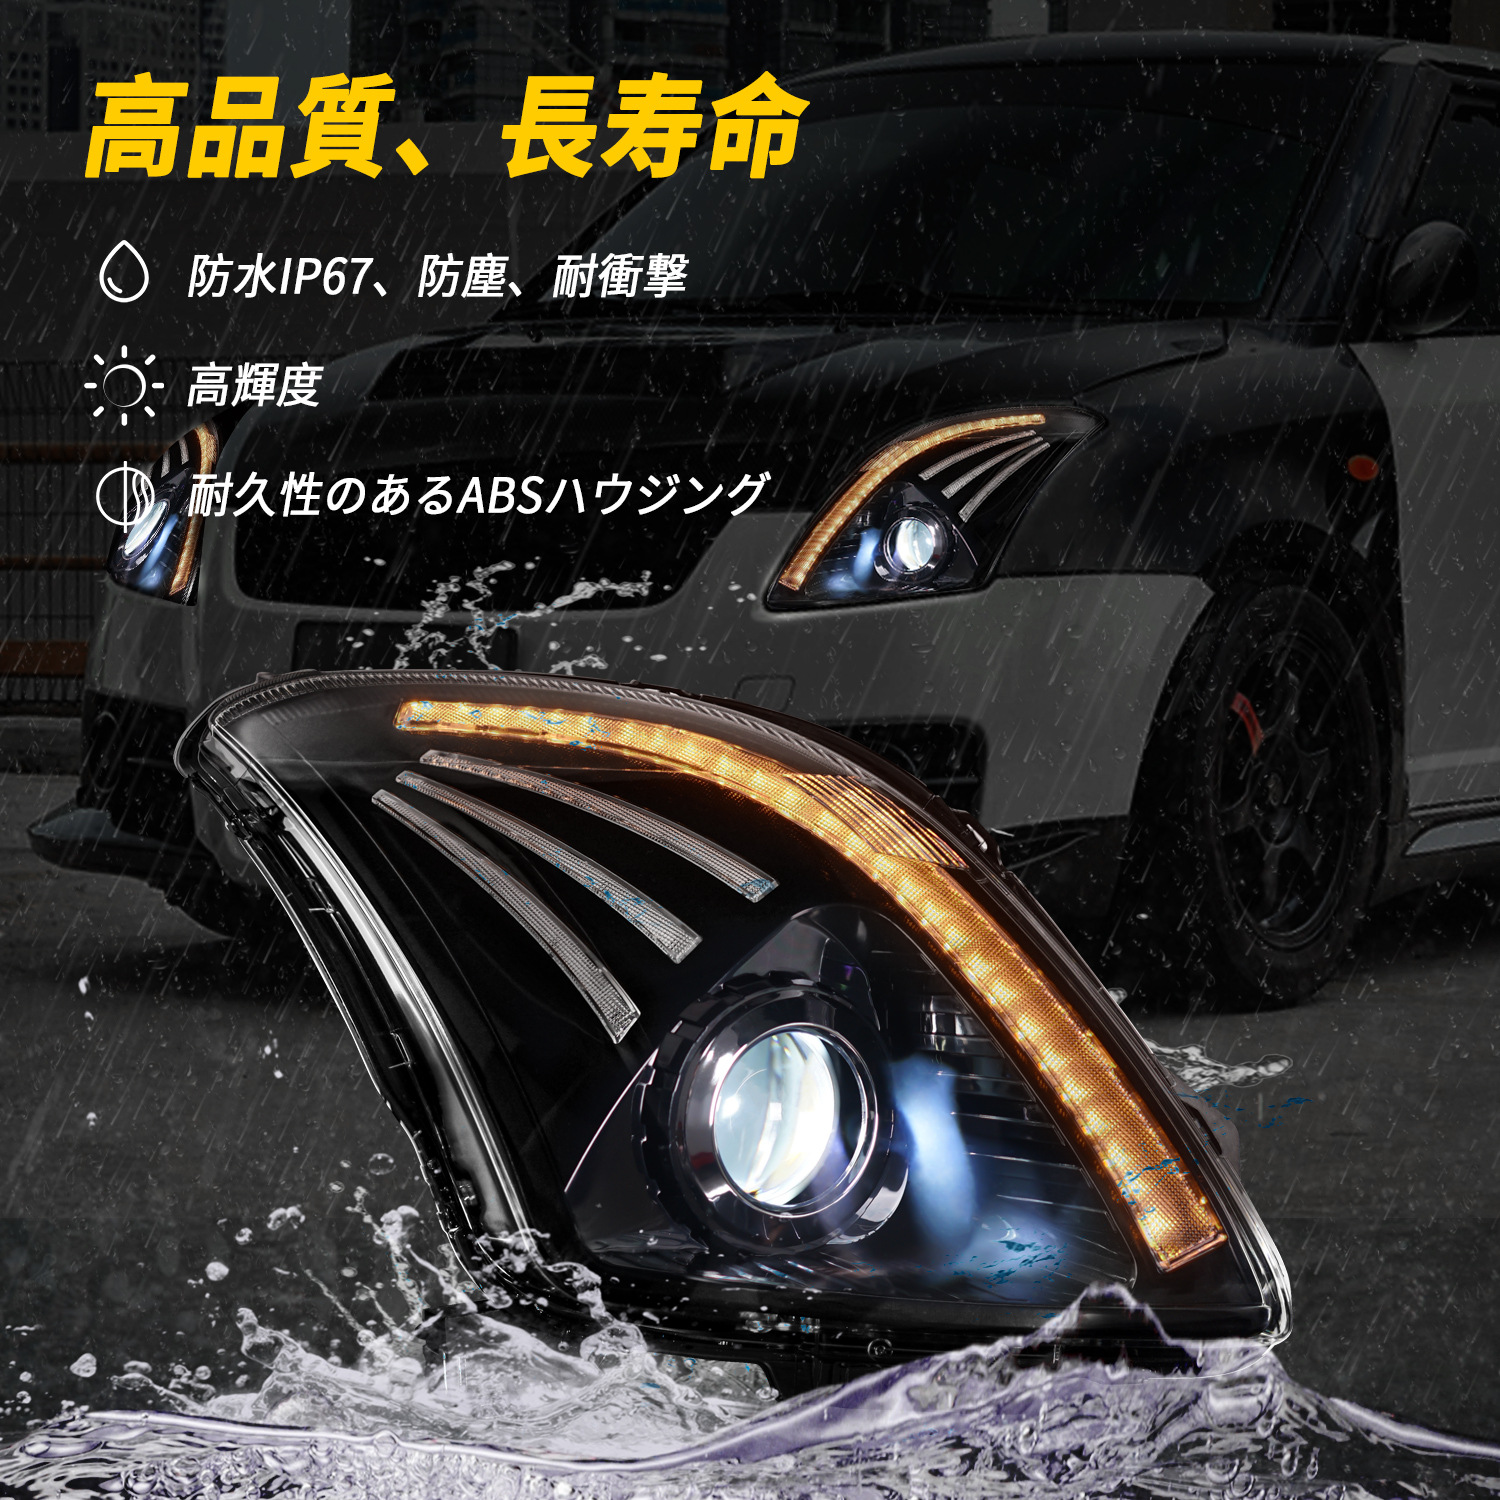 Lampada frontale auto Suzuki SWIFT 2005-2016 Luci di marcia diurna a LED Gruppo fari abbaglianti con indicatori di direzione